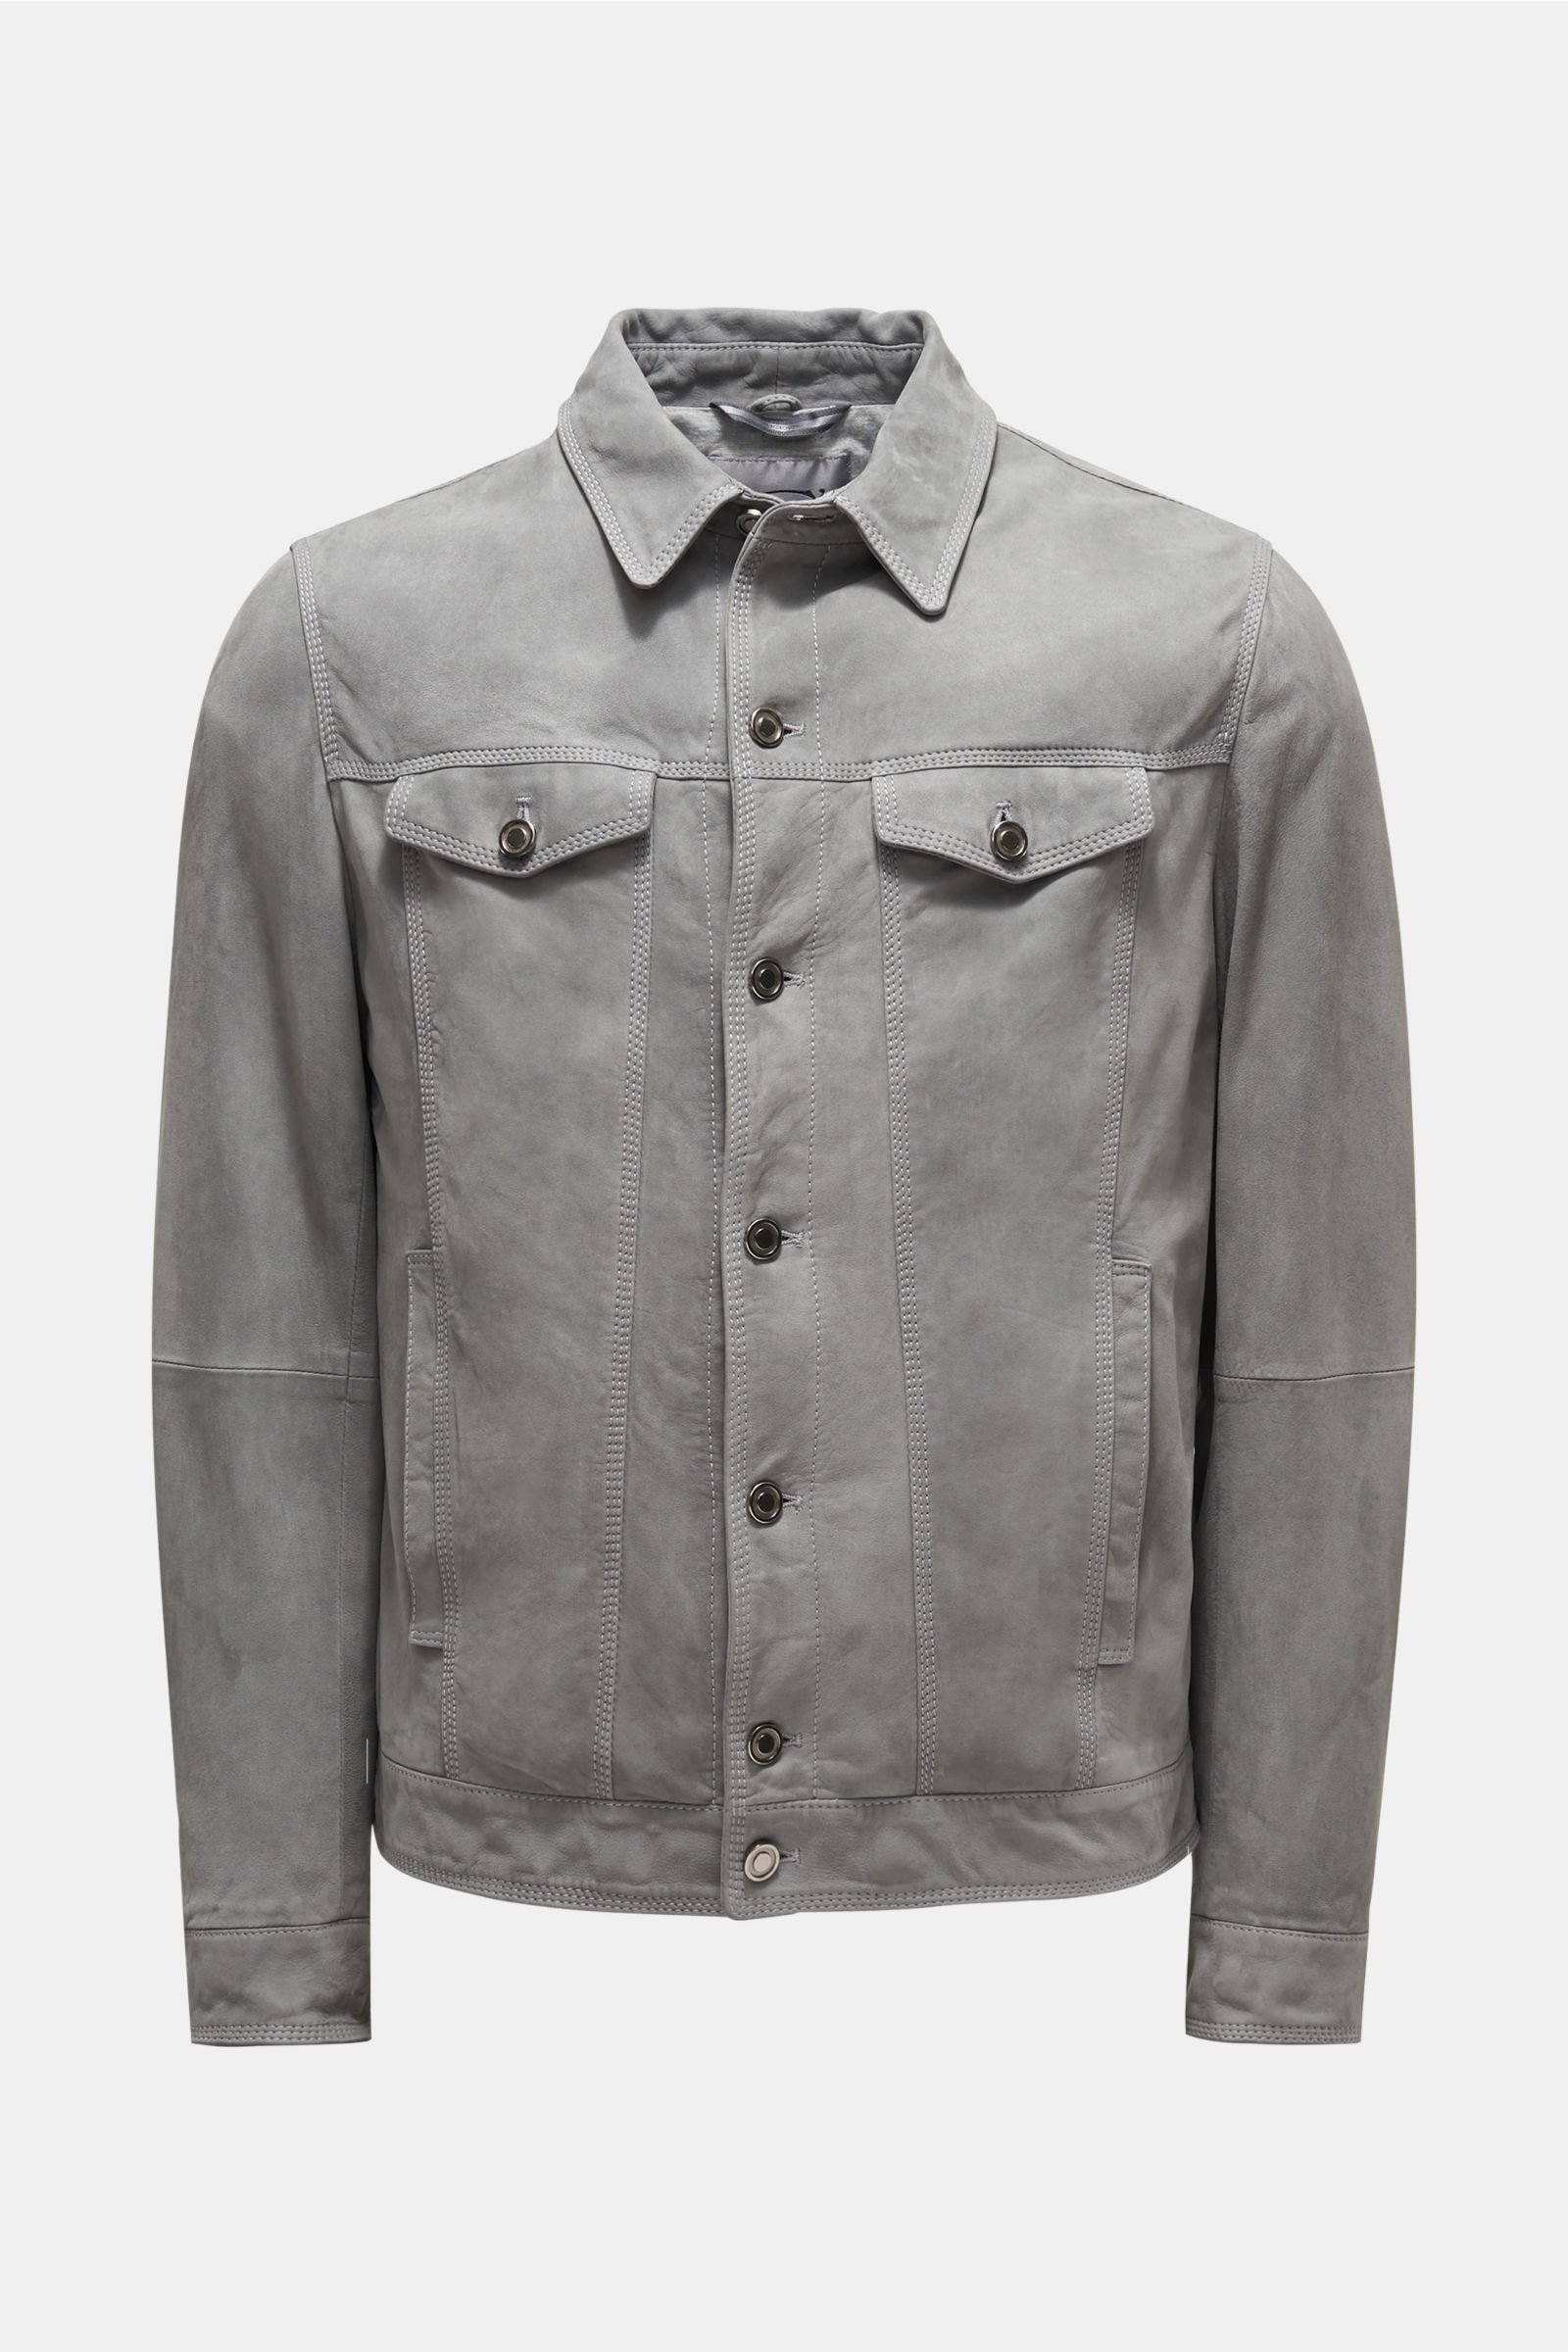 Leather jacket grey